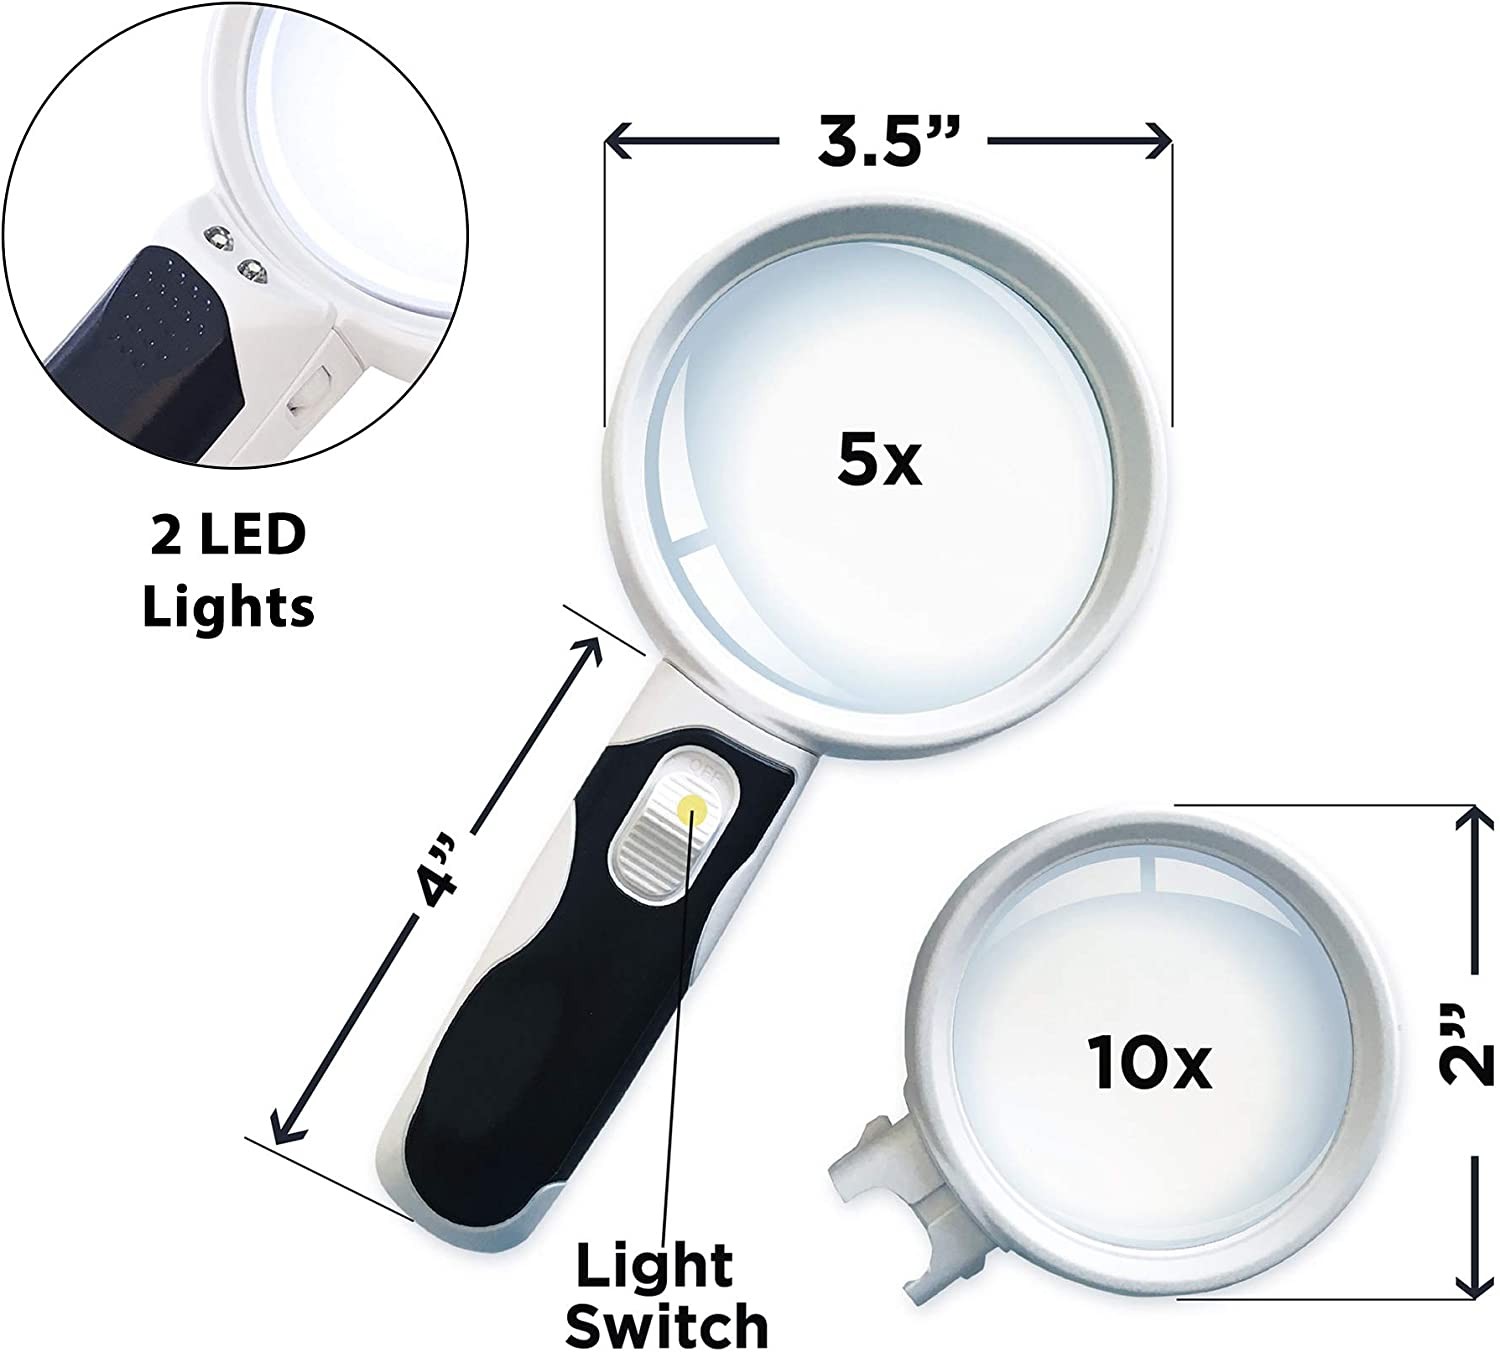 5X,10X LED Illuminated Magnifying Glass Set 